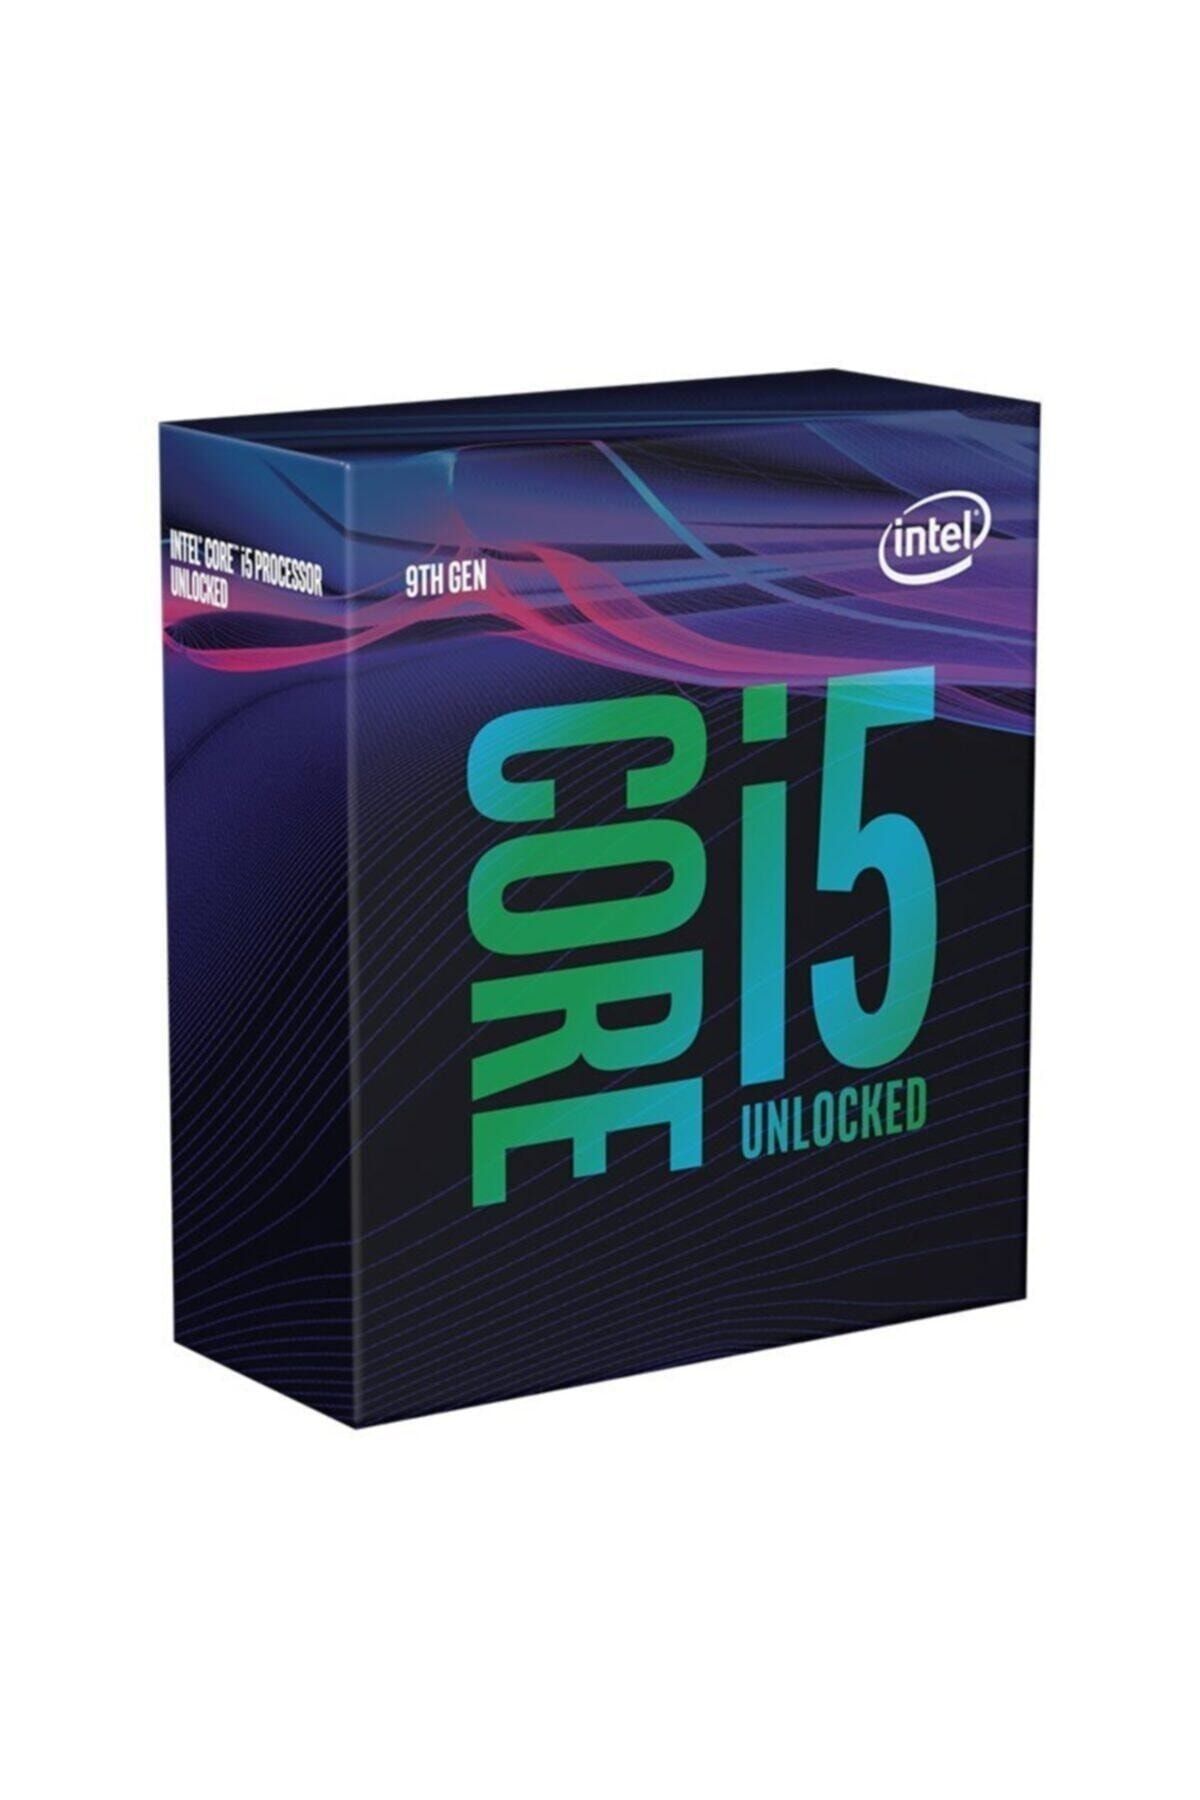 Intel Core I5 9600k 1151 V.2 Soket 3.7ghz 9mb Ön Bellek 14nm Işlemci Bx80684ı59600k